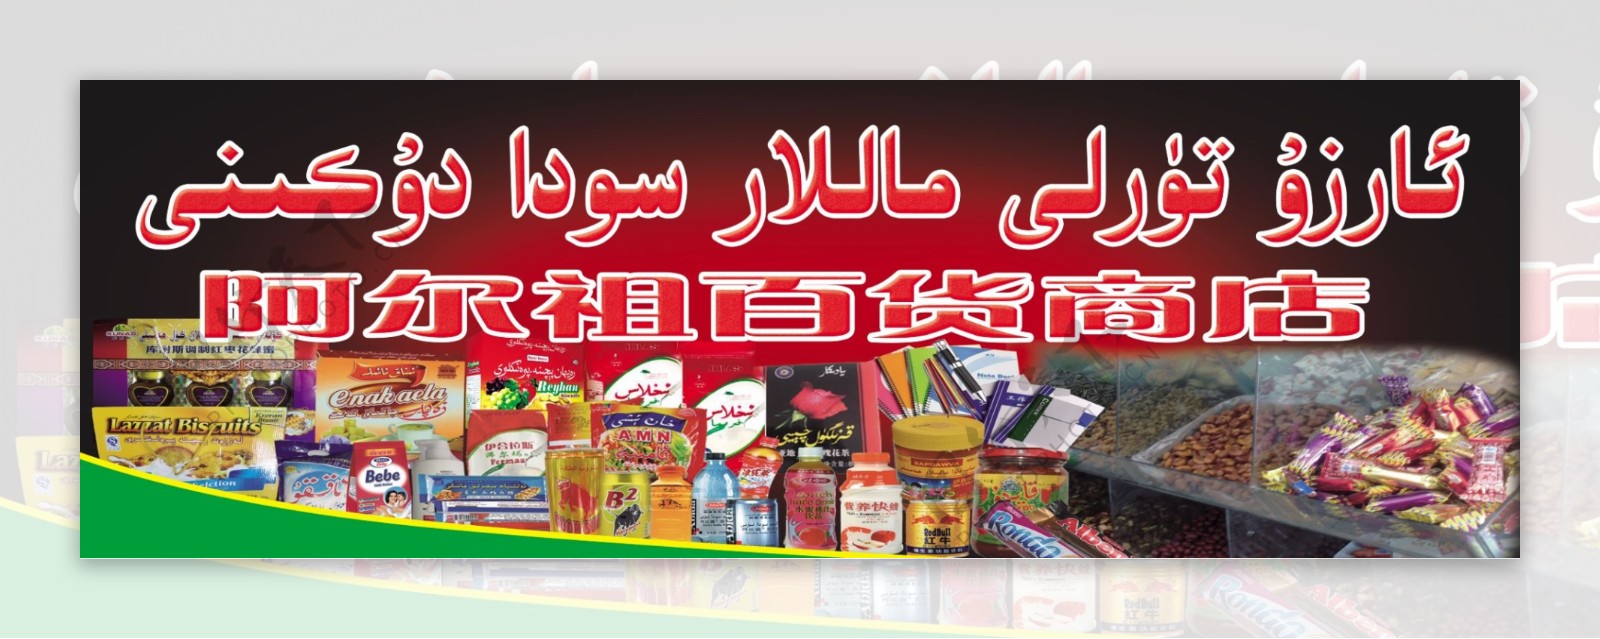 维吾尔族商店